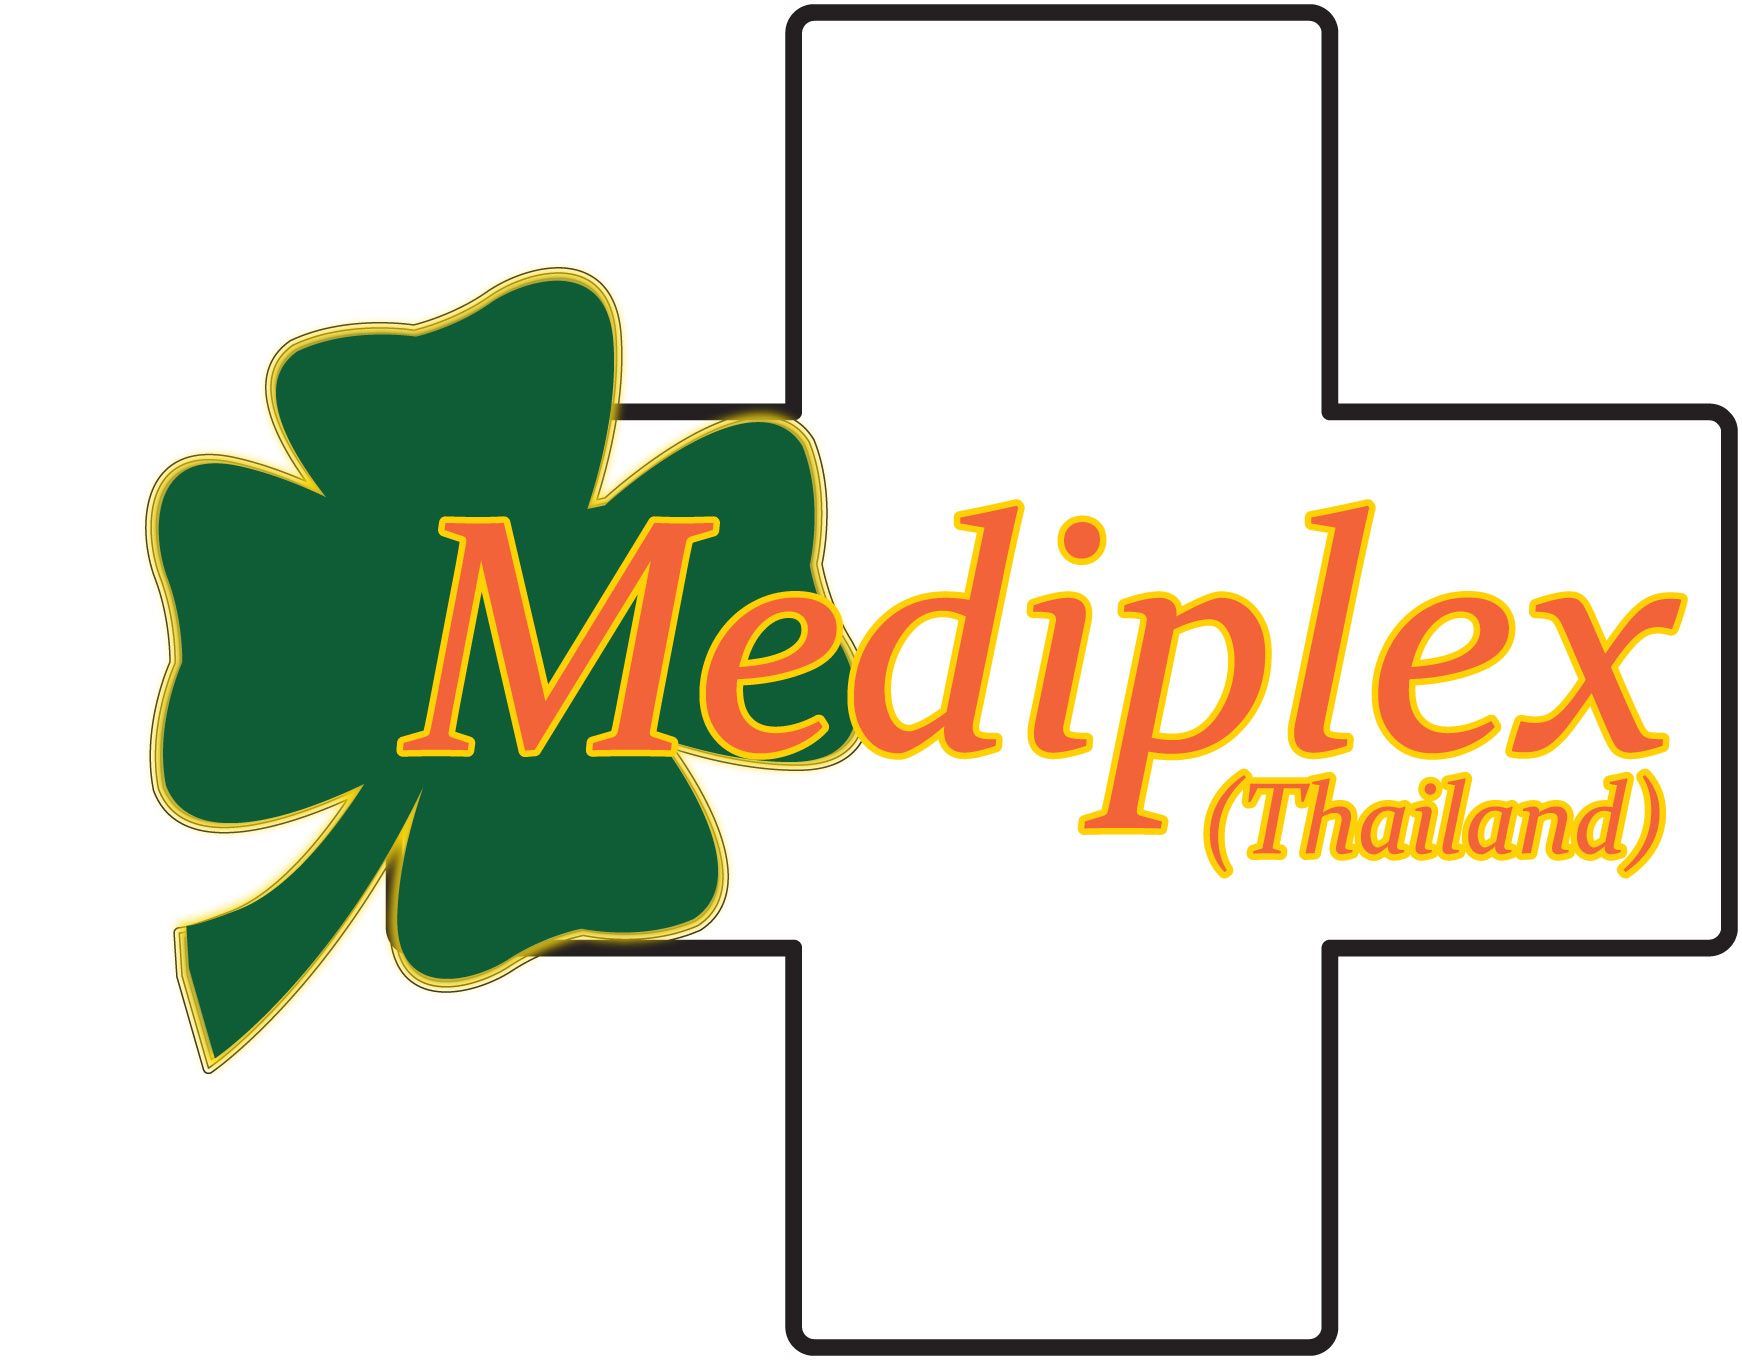 บริษัทเมดดิเพล็กซ์ (ไทยแลนด์) จำกัด logo โลโก้